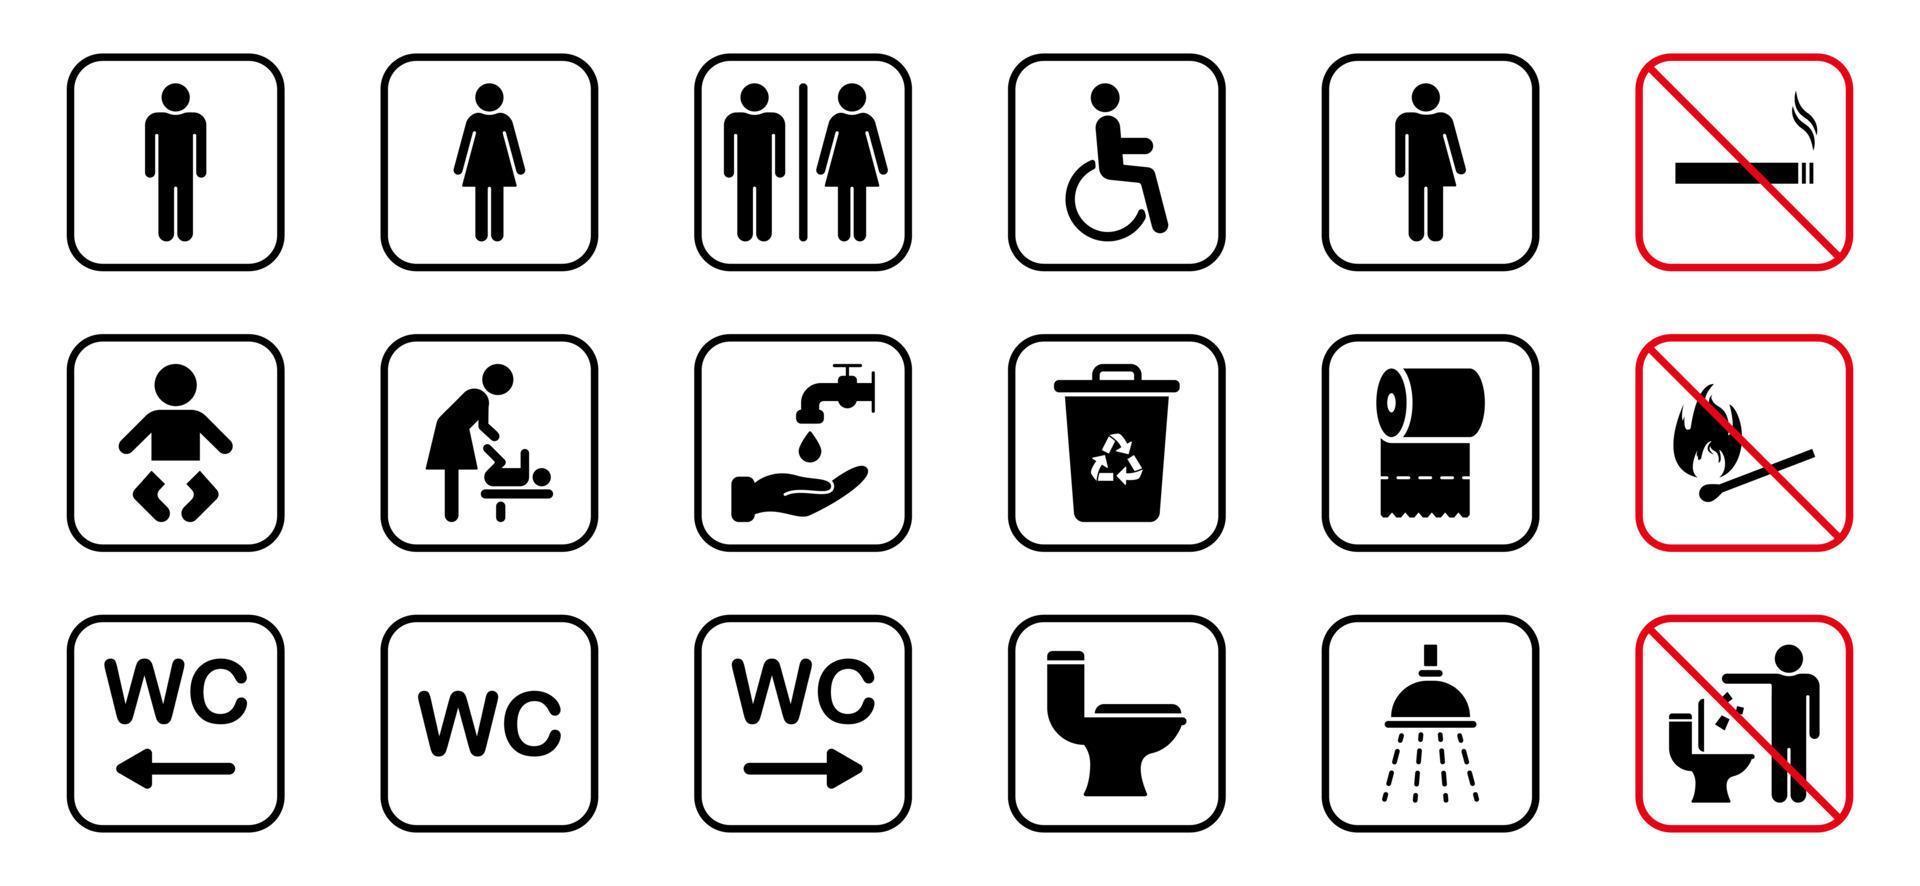 icona della siluetta della stanza da bagno. set di segno wc. bagno, pittogramma del bagno. bagno pubblico per disabili, uomini, donne, transgender. stanza della mamma e del bambino. segno di divieto di fumo. illustrazione vettoriale. vettore